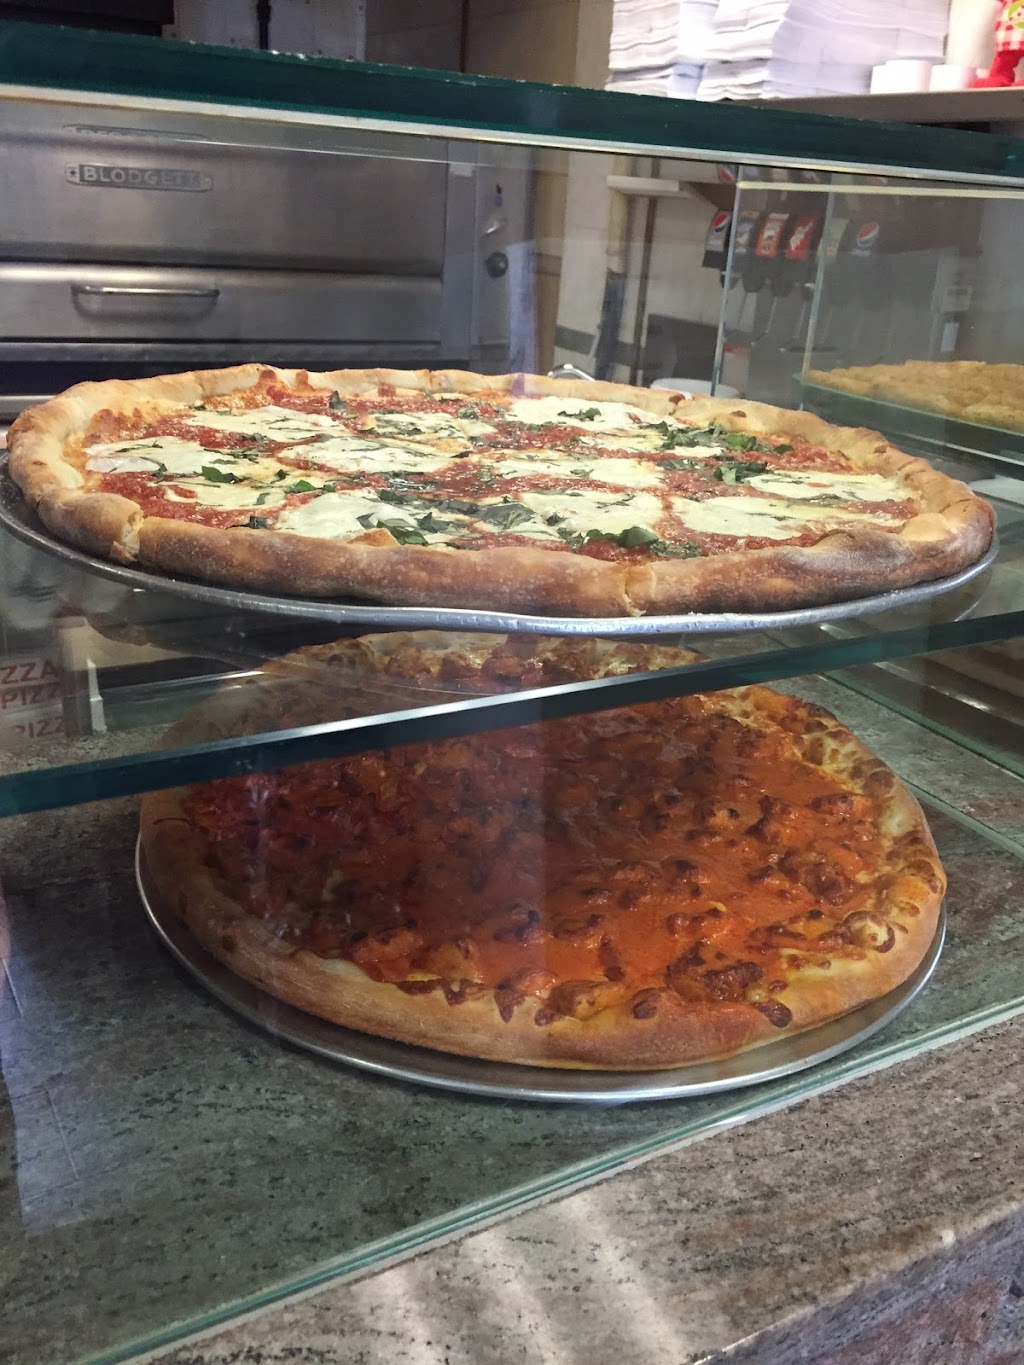 Tonys Pizzeria and Restaurant | 161 Clarke St, Brentwood, NY 11717 | Phone: (631) 435-9247